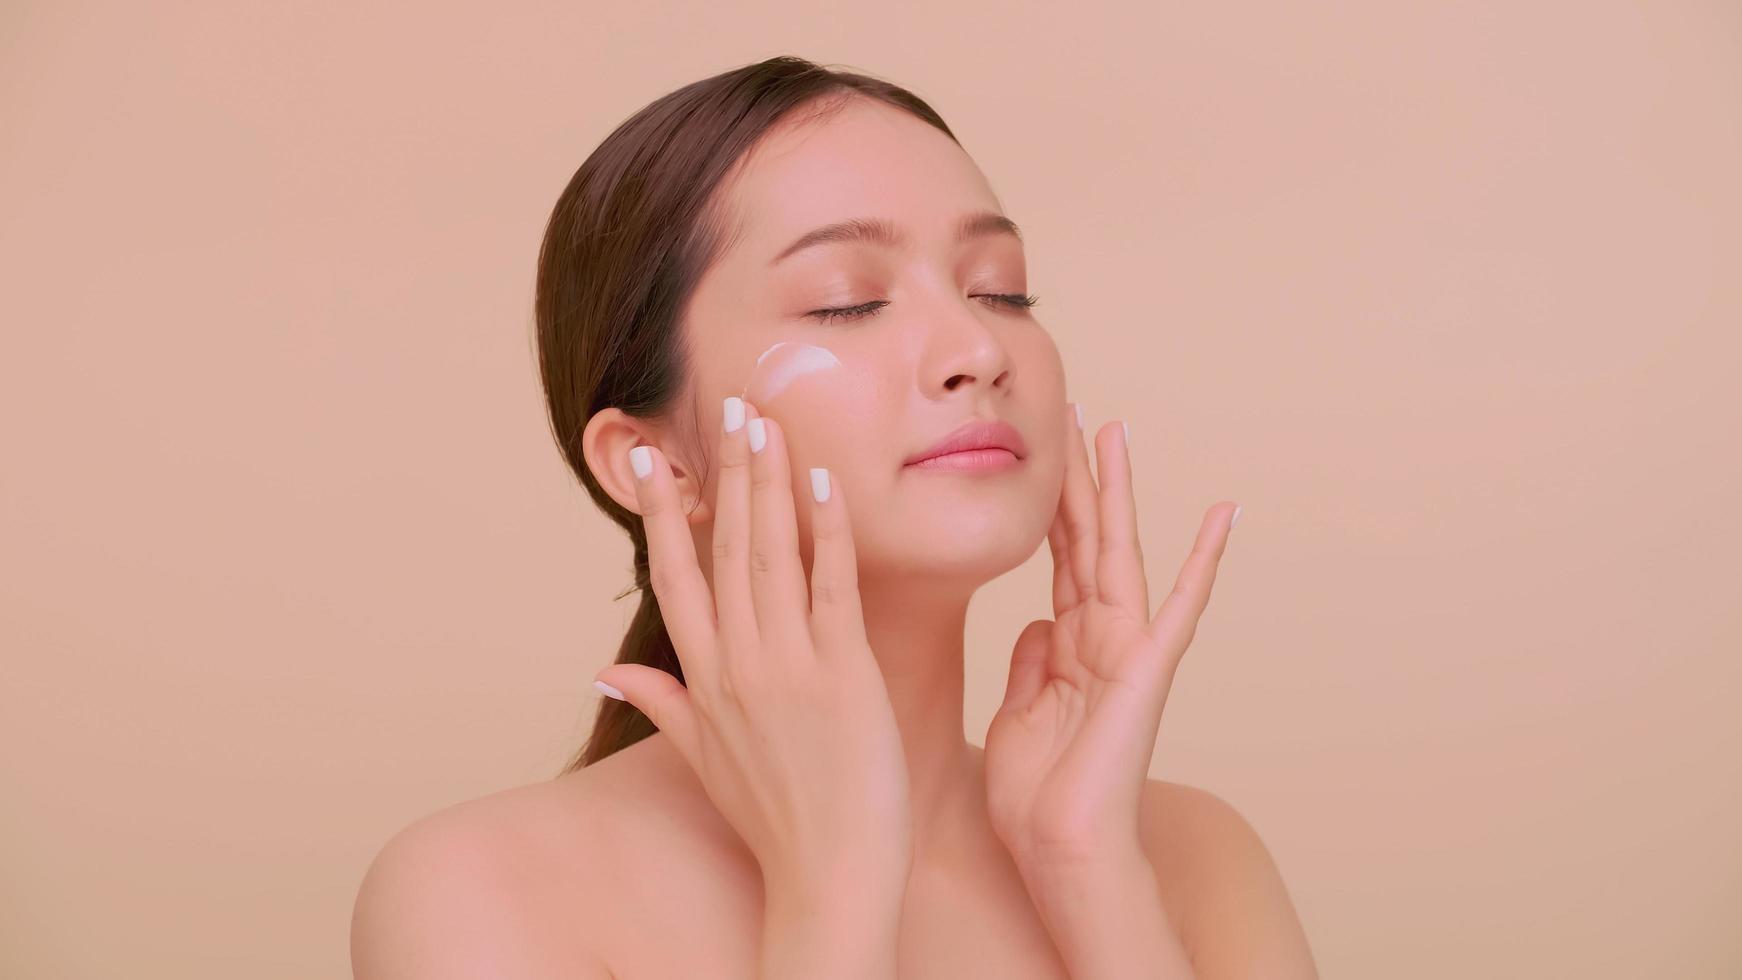 hermoso rostro de mujer joven asiática con piel natural. retrato de una niña aplicando crema humectante en la cara. foto